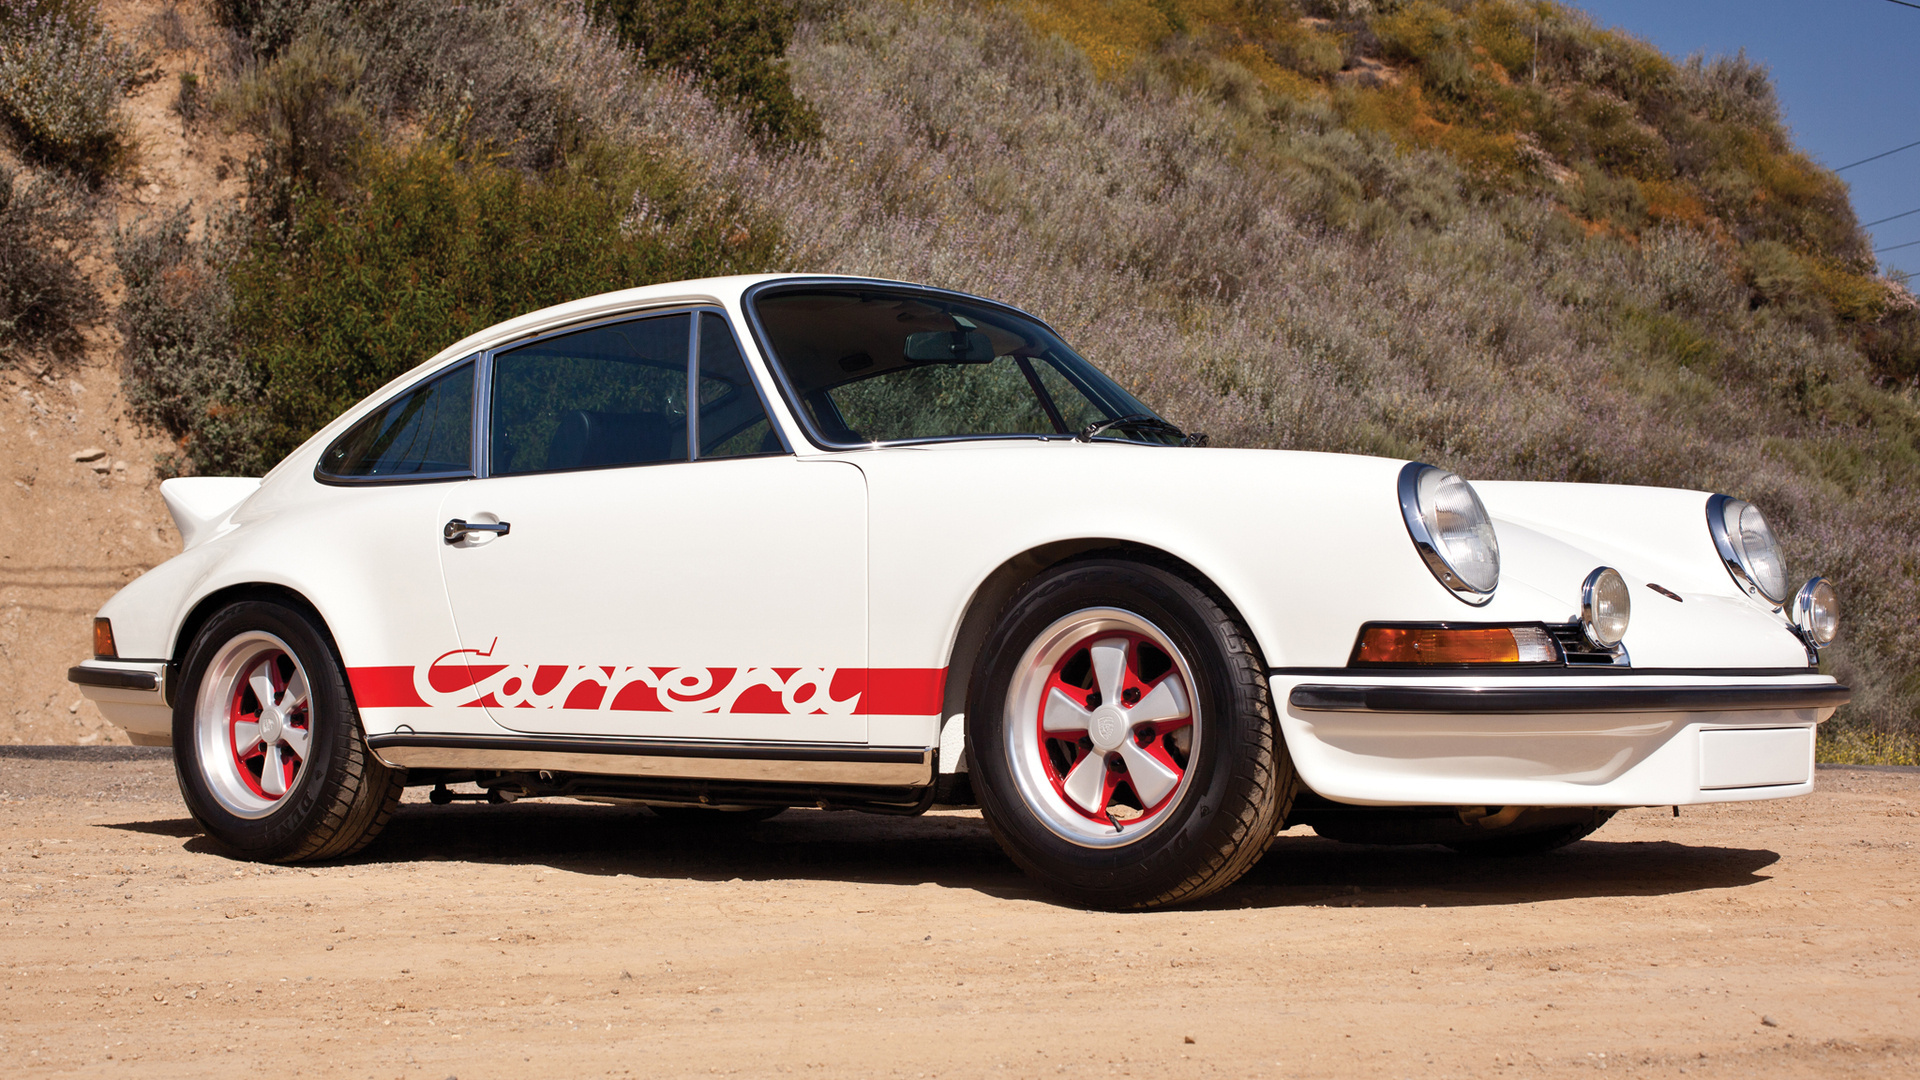 Porsche 911 Carrera RS HD wallpapers, Desktop wallpaper - most viewed